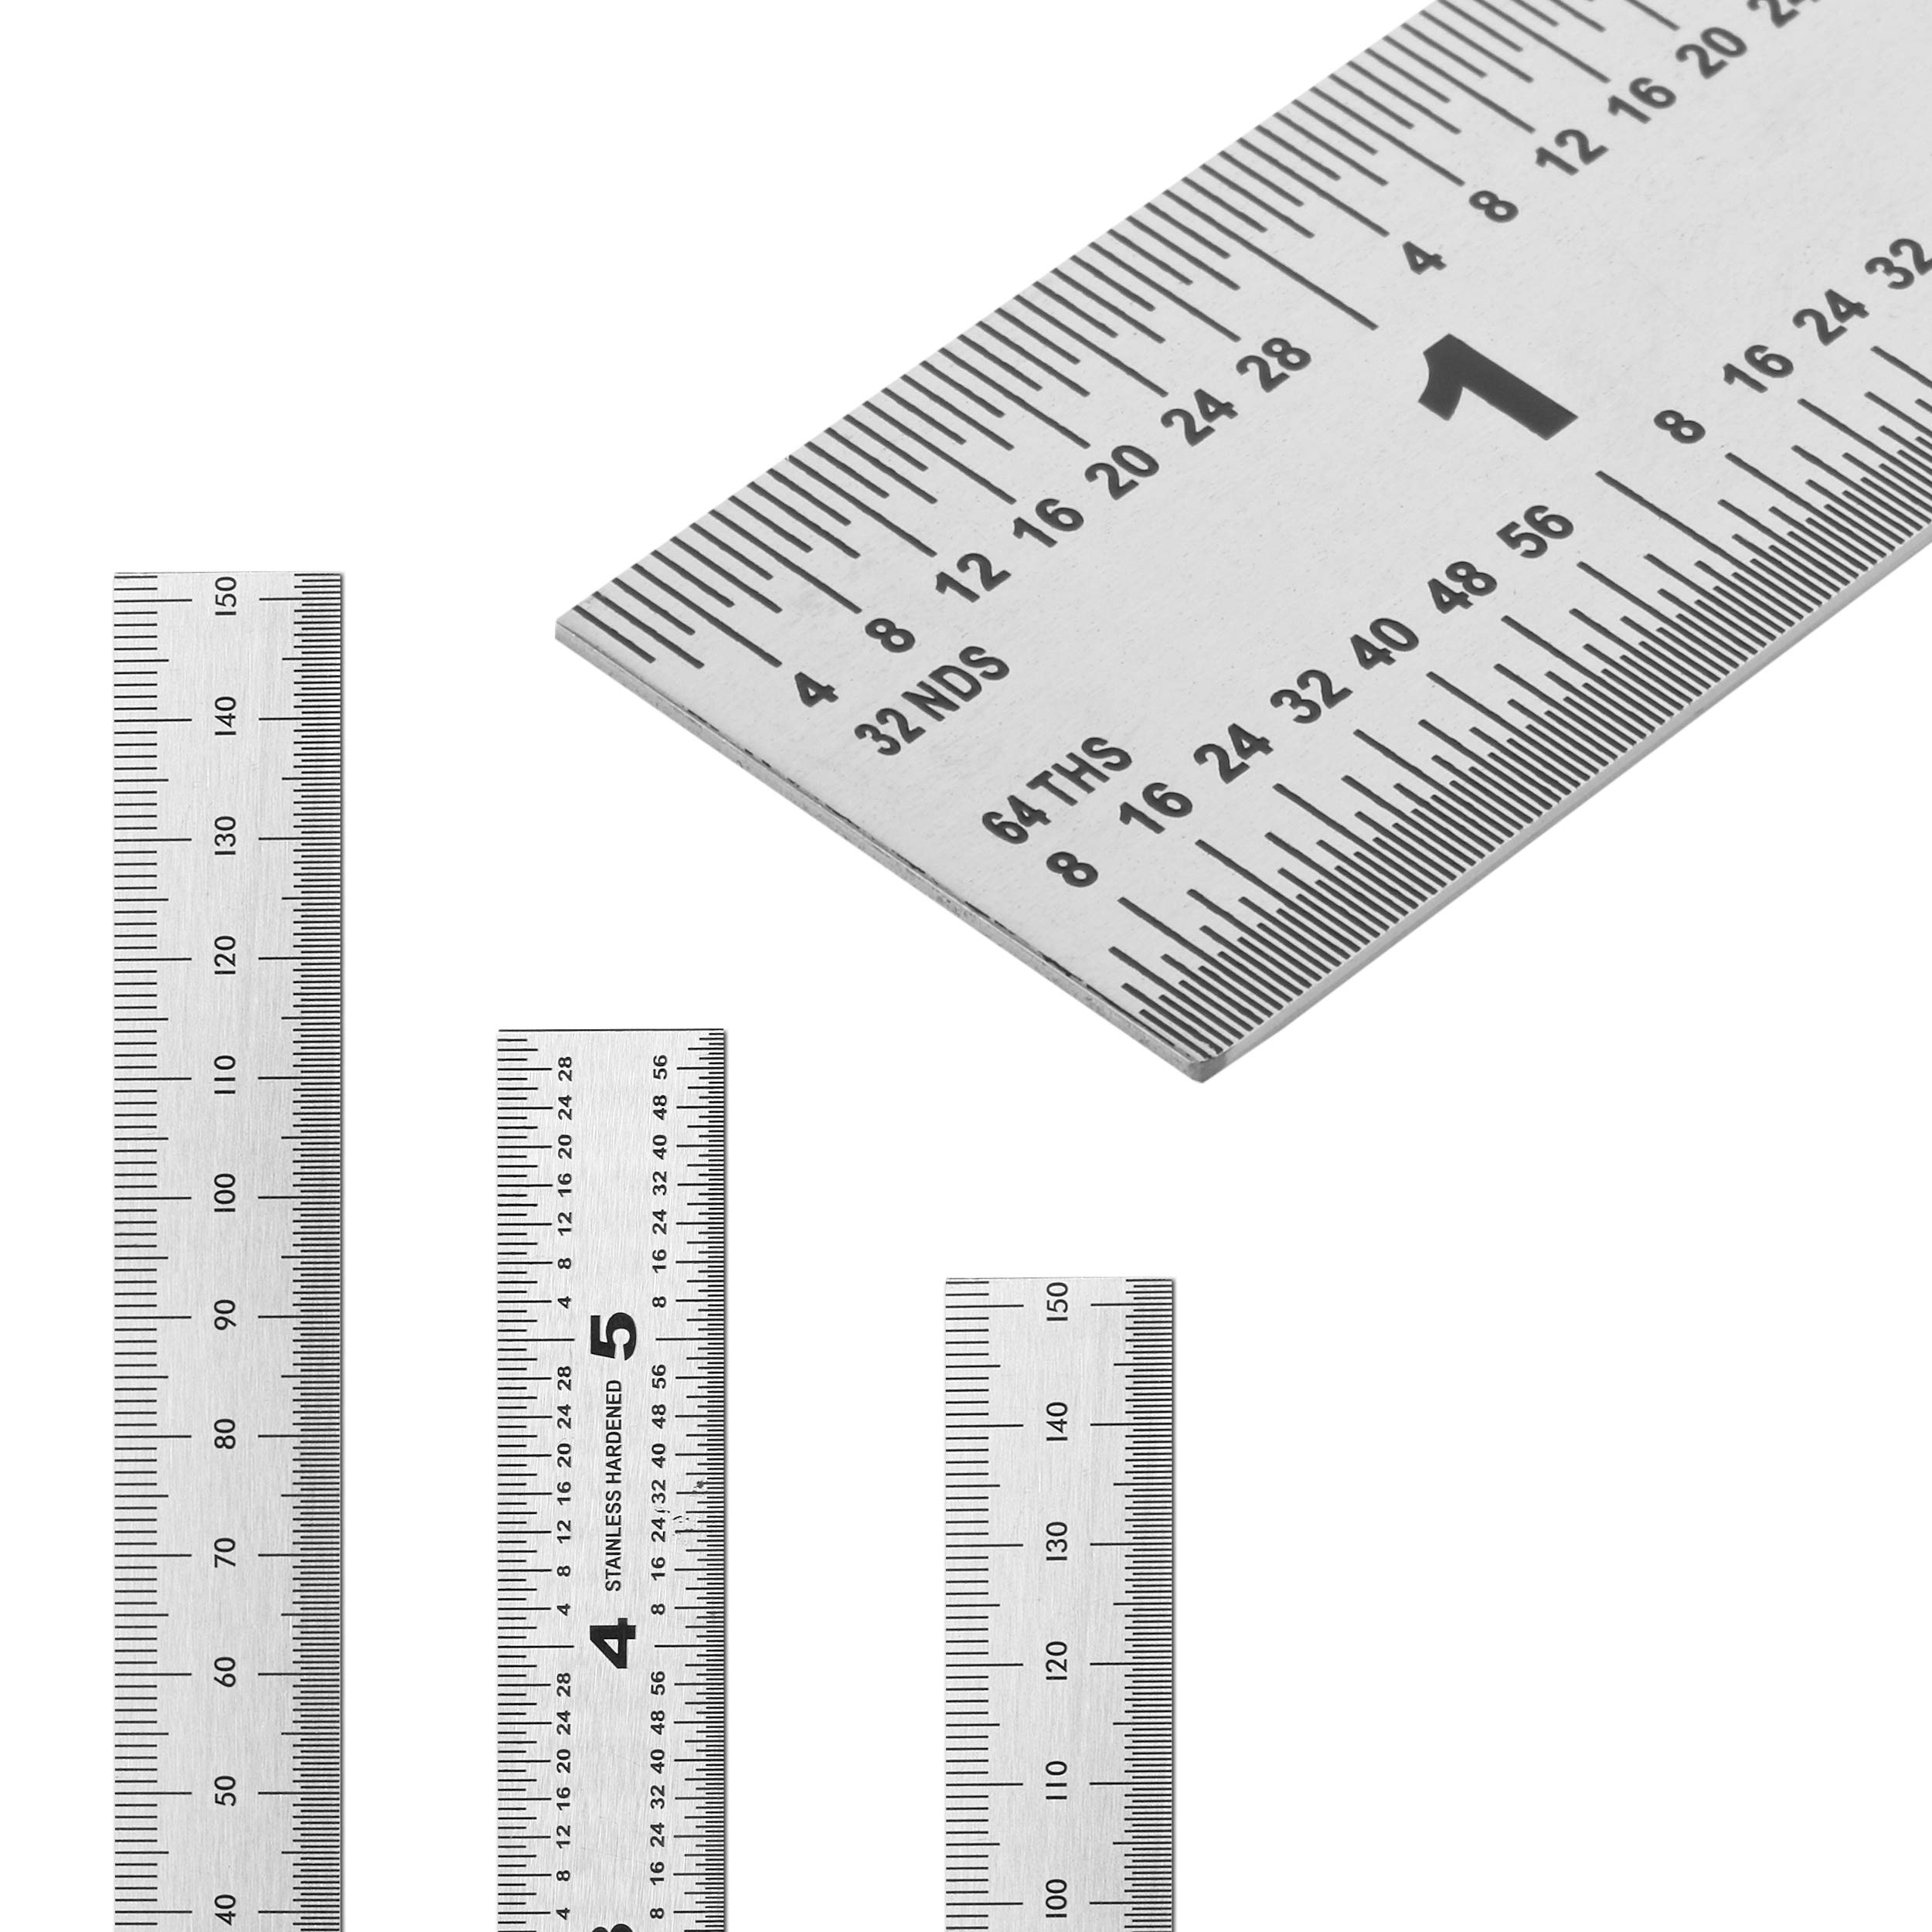 Mr. Pen- Machinist Ruler, Ruler 6 inch, 3 Pack, mm Ruler, Metric Ruler, Millimeter Ruler, (1/64, 1/32, mm and .5 mm), Metal Ruler 6 inch, Precision Ruler, 6 inch Ruler, Stainless Steel Ruler, Rulers